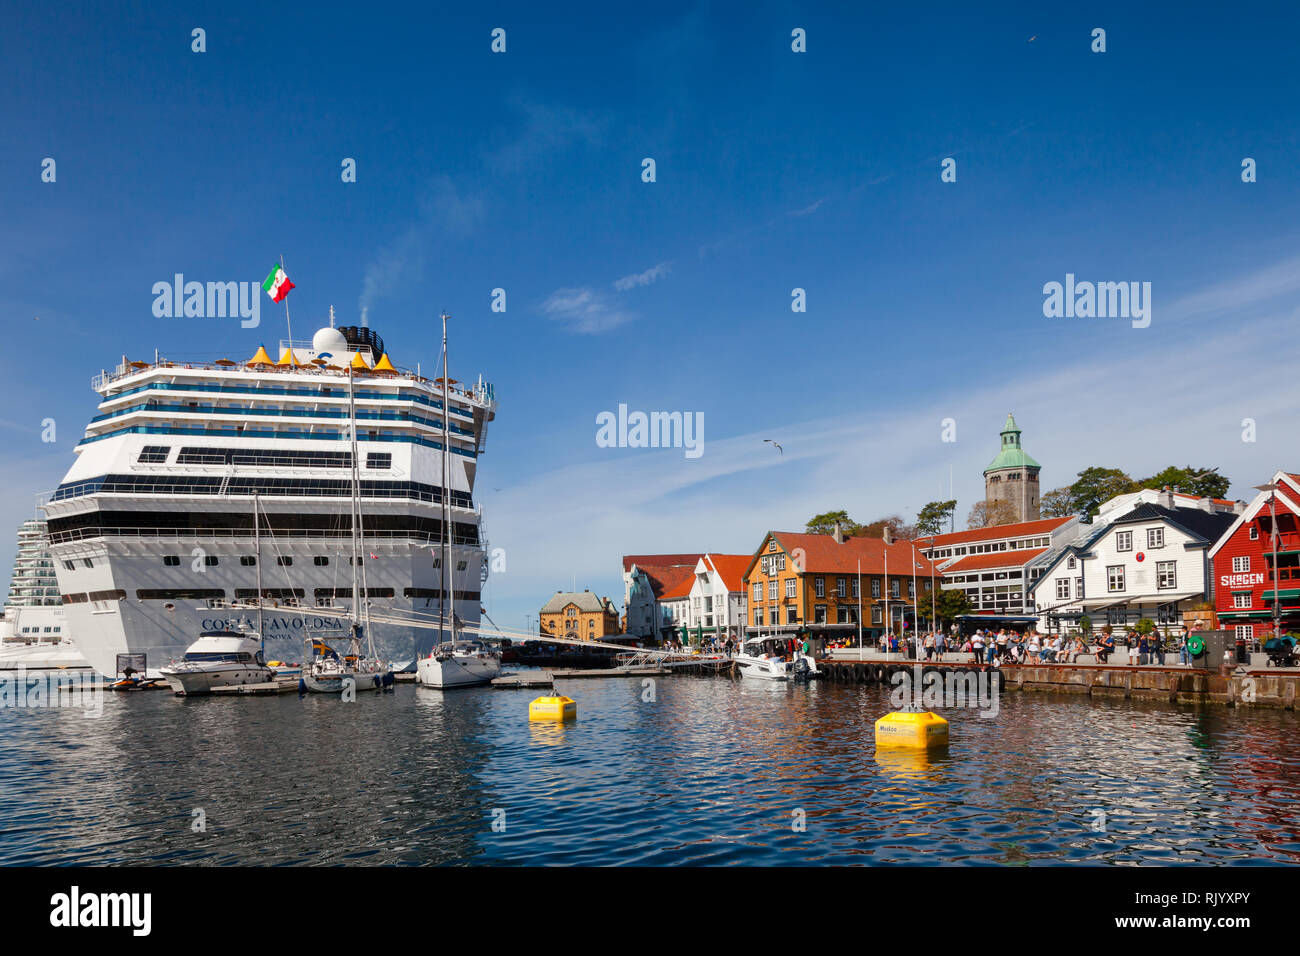 STAVANGER, Norvège - le 14 août 2018 : Costa Favolosa bateau de croisière amarré à quai dans le port de Vagen Skagenkaien de rizière, un destin touristique populaire Banque D'Images